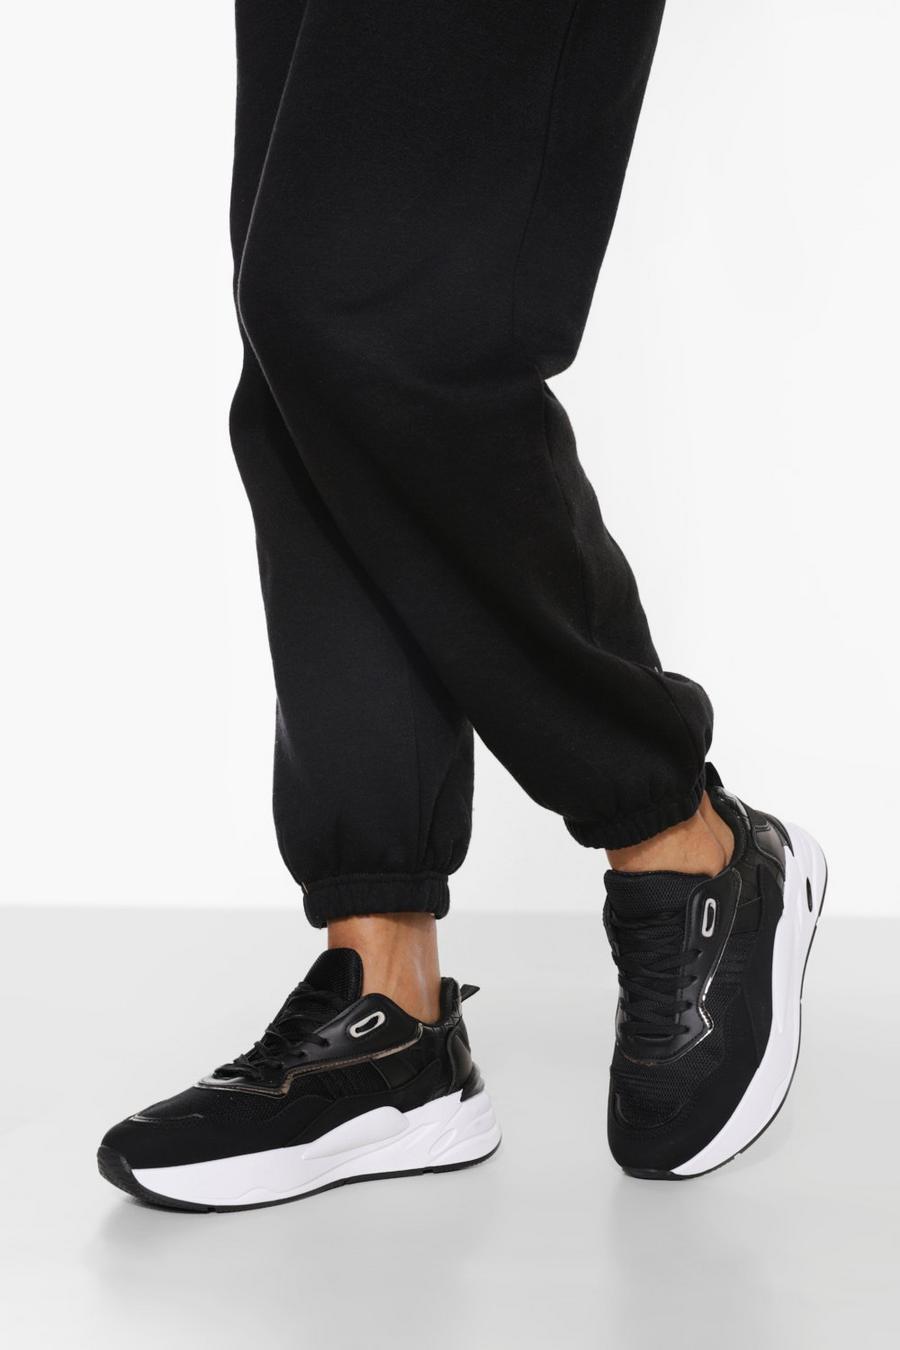 שחור נעלי ספורט עם סוליה עבה בצבע מנוגד  image number 1